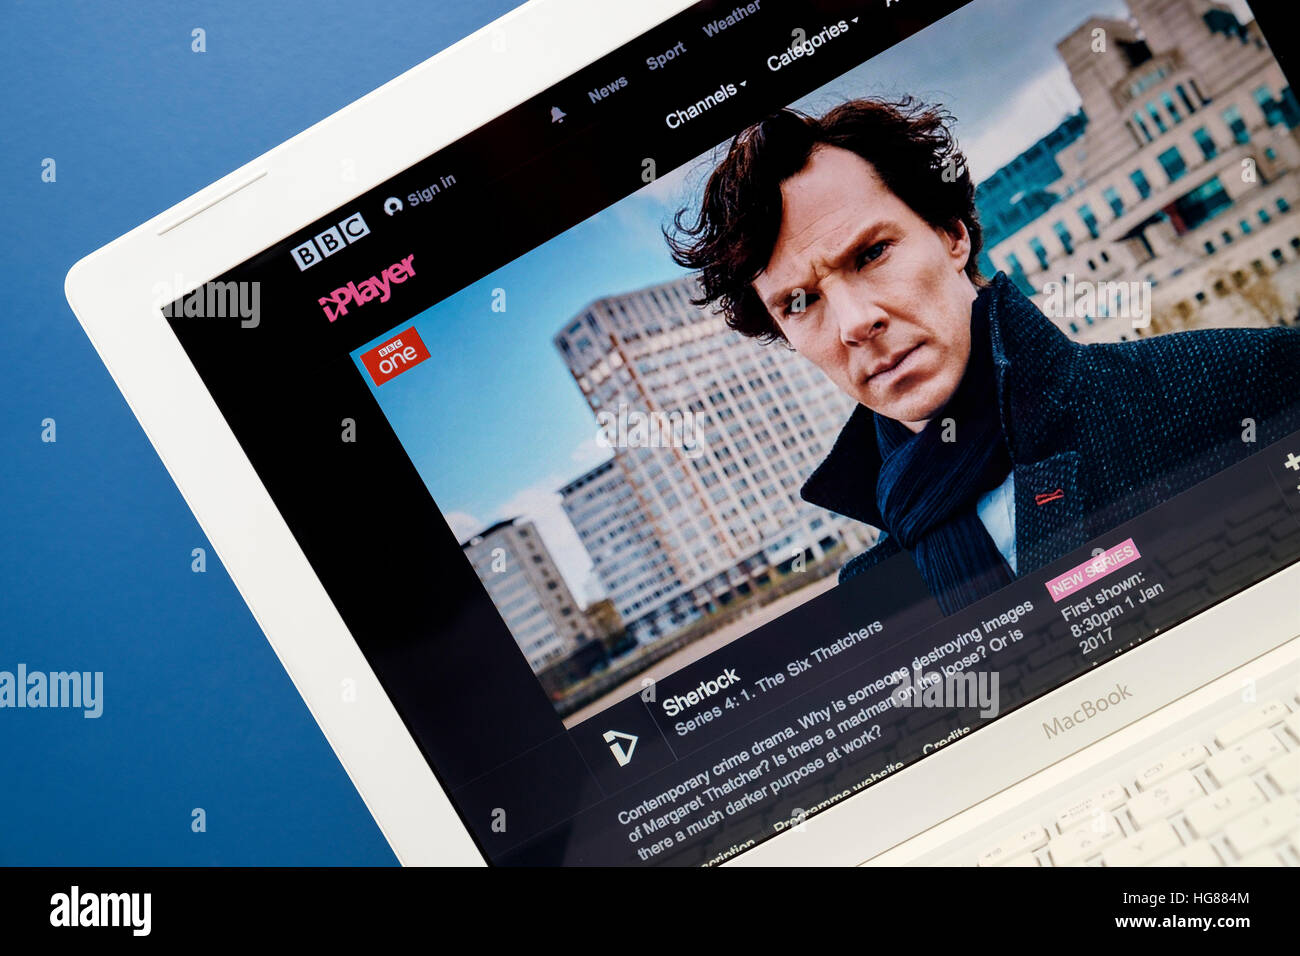 BBC iplayer website la riproduzione del programma tv Sherlock visualizzata su un computer portatile schermo Foto Stock